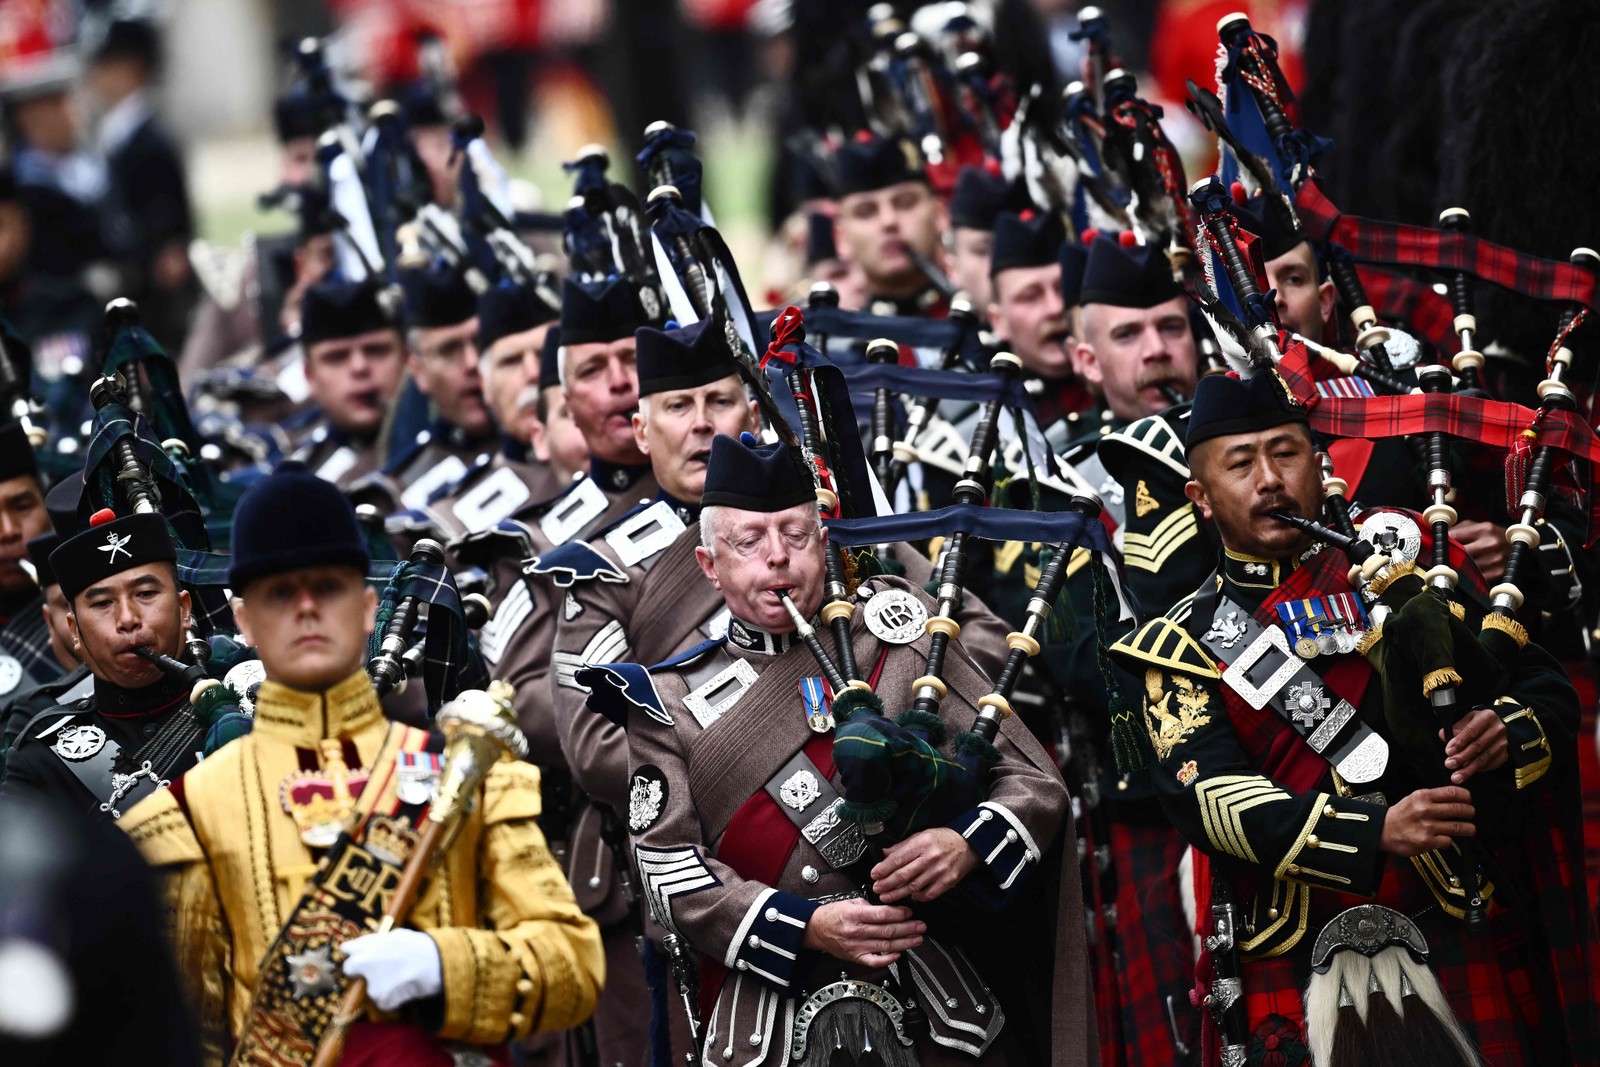 Flautistas da Guarda Escocesa e Irlandesa marcham fora da Abadia de Westminster, em Londres — Foto: Marco BERTORELLO / AFP